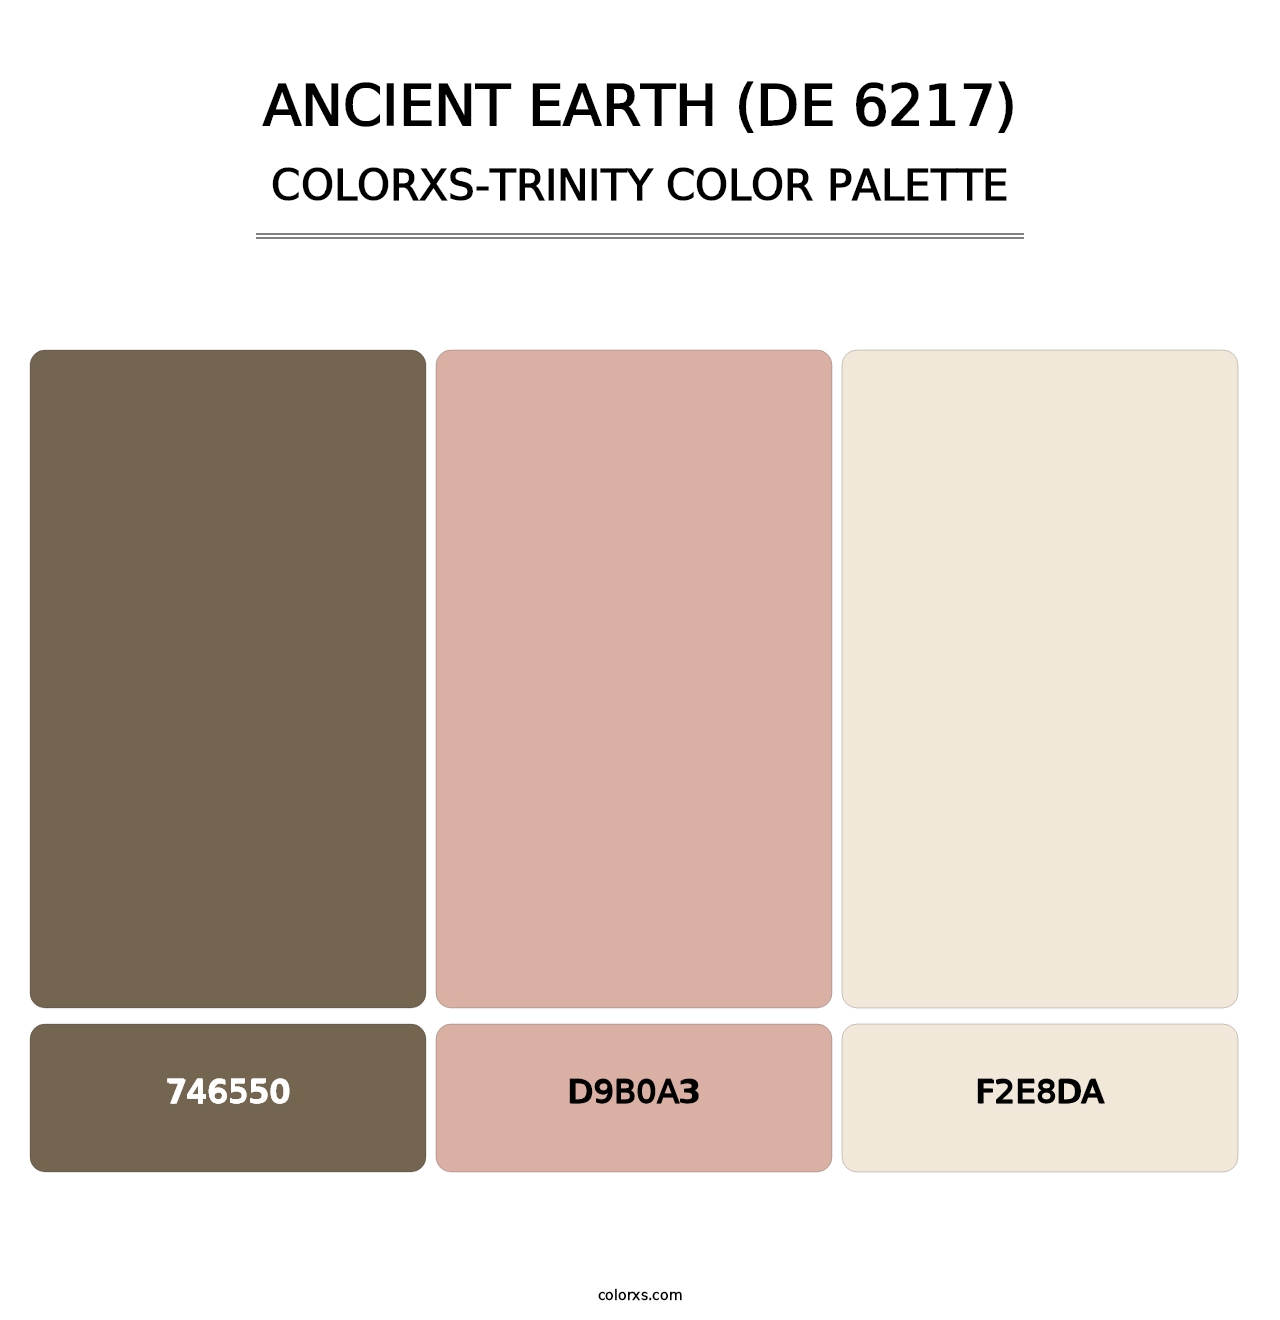 Ancient Earth (DE 6217) - Colorxs Trinity Palette